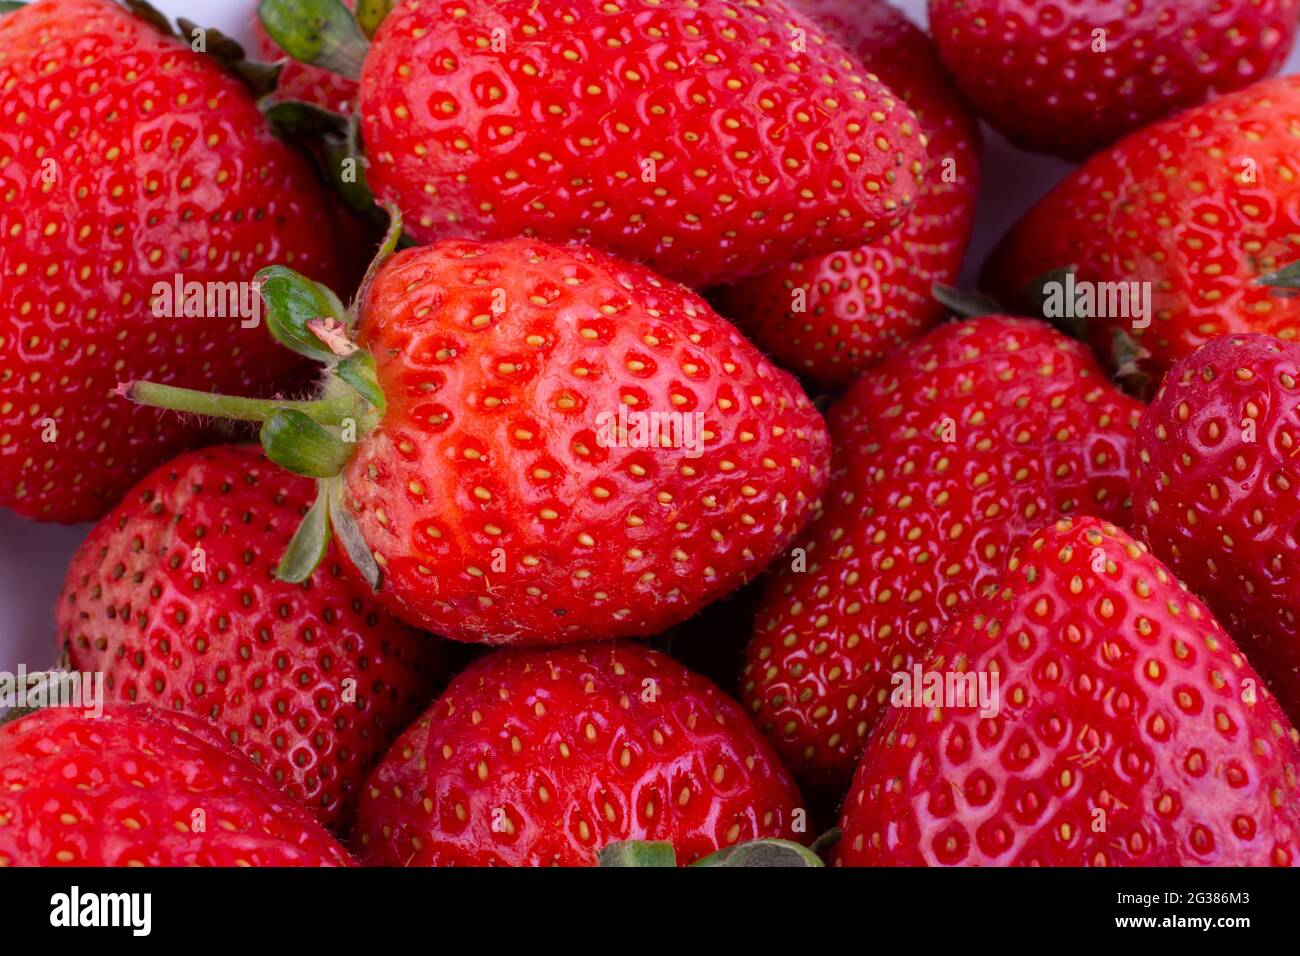 Frische rote Erdbeere. Fragaria Gattung der blühenden Pflanzen in der Familie der Rosengewächse, Rosaceae, bekannt als Erdbeeren für ihre essbaren Früchte. Da ist ein Stockfoto